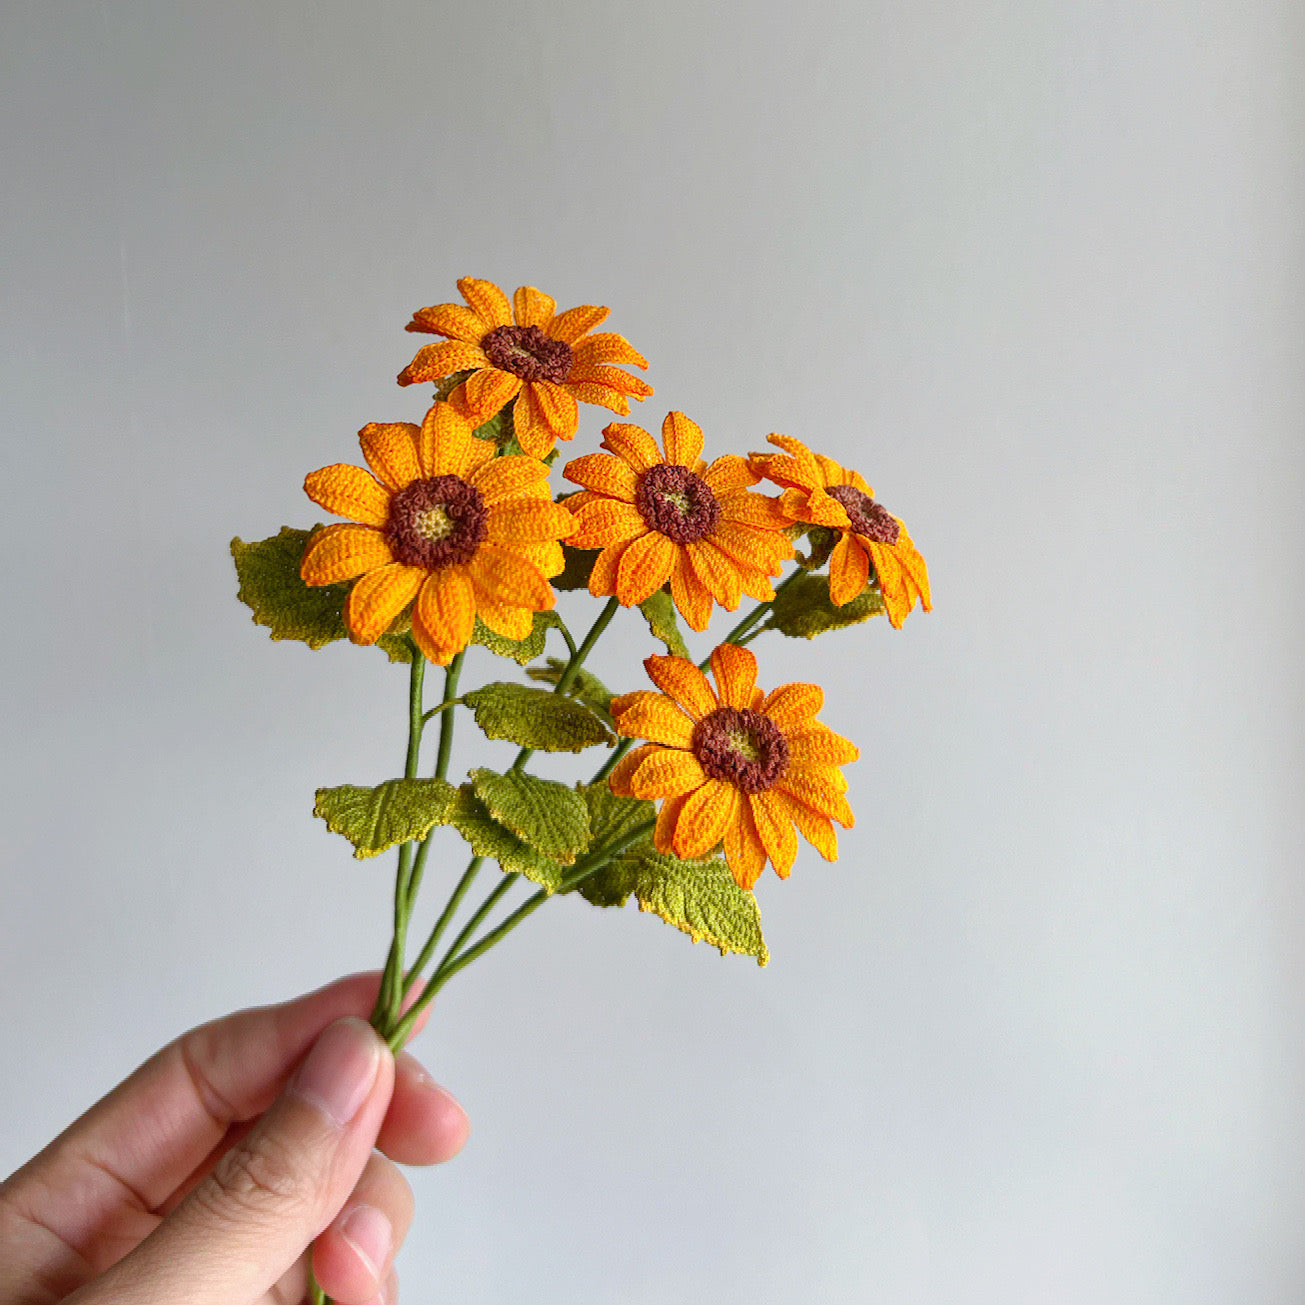 Micro Crochet Sunflower | Beautiful Mini Decor | Special Book Mark | Unique Gift for Her